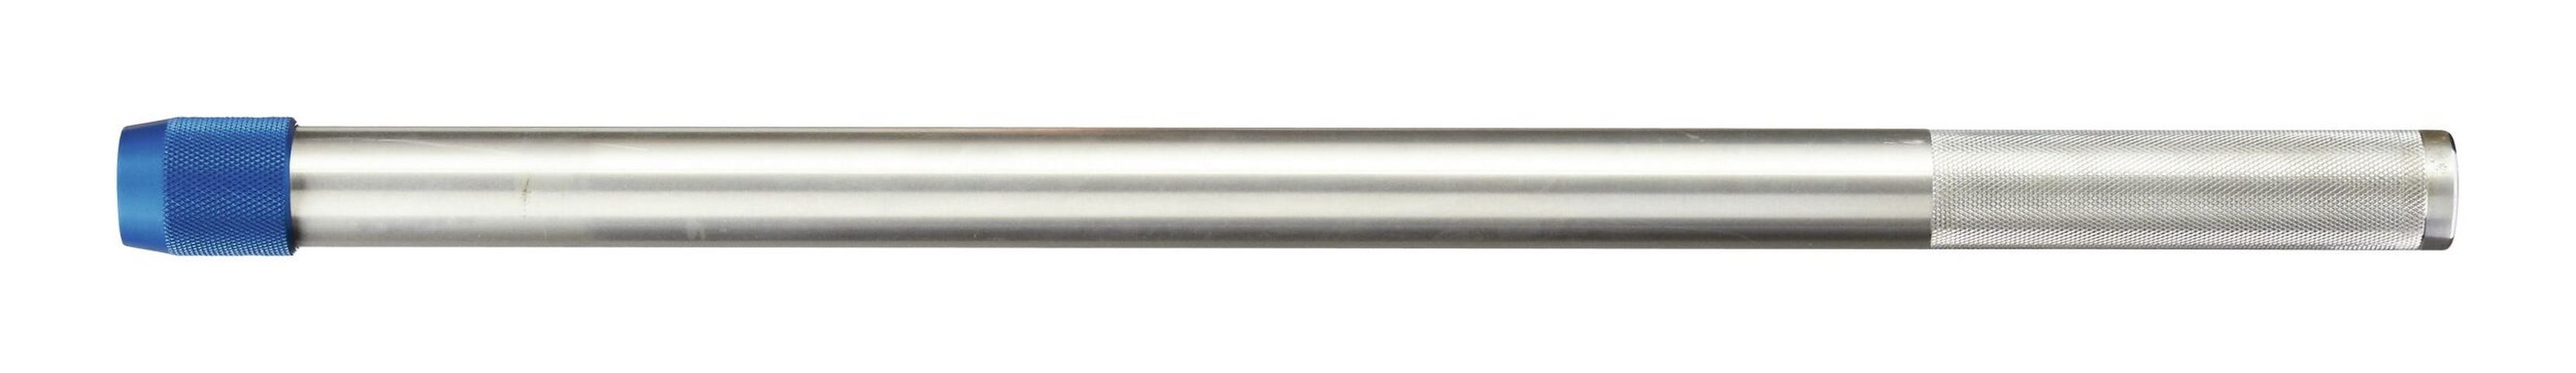 Aufsteckrohr für Drehmomentschlüssel Gedore mm 762 Drehmomentschlüssel, Dremometer Aluminium